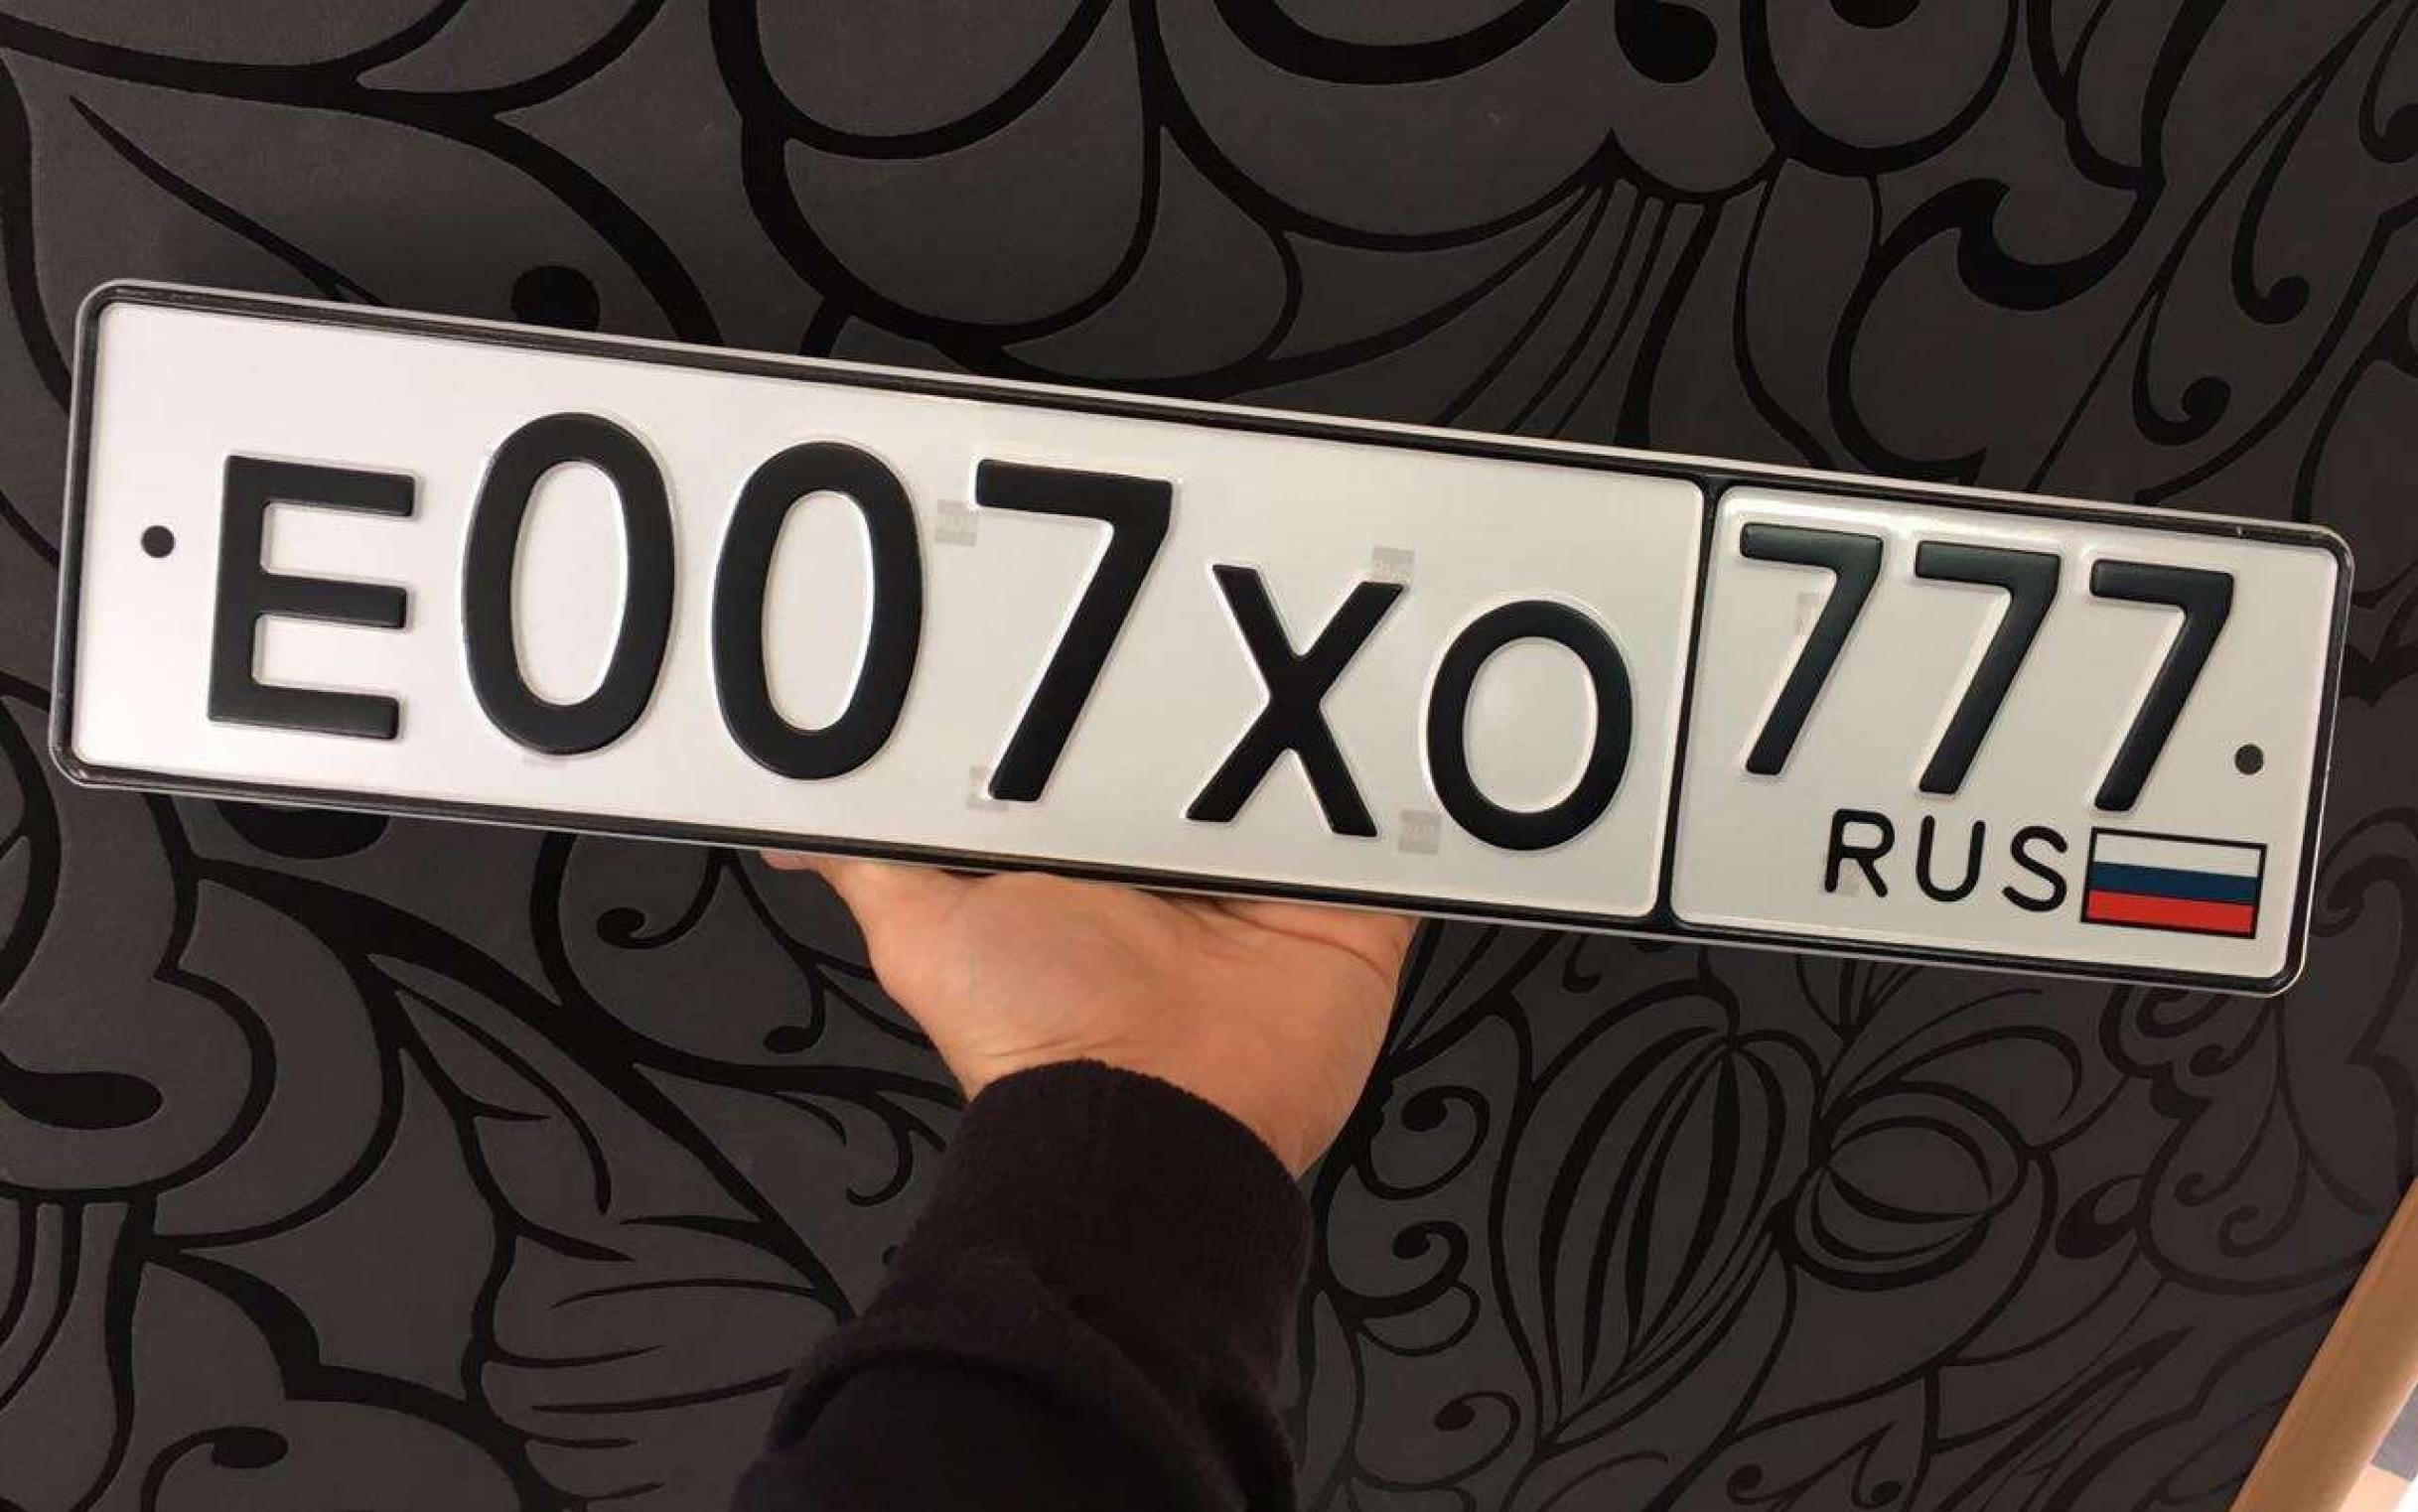 Продать номера в москве. Номера на авто. Красивые номерные знаки. Номер авто Москва. Красивые номера на машину.